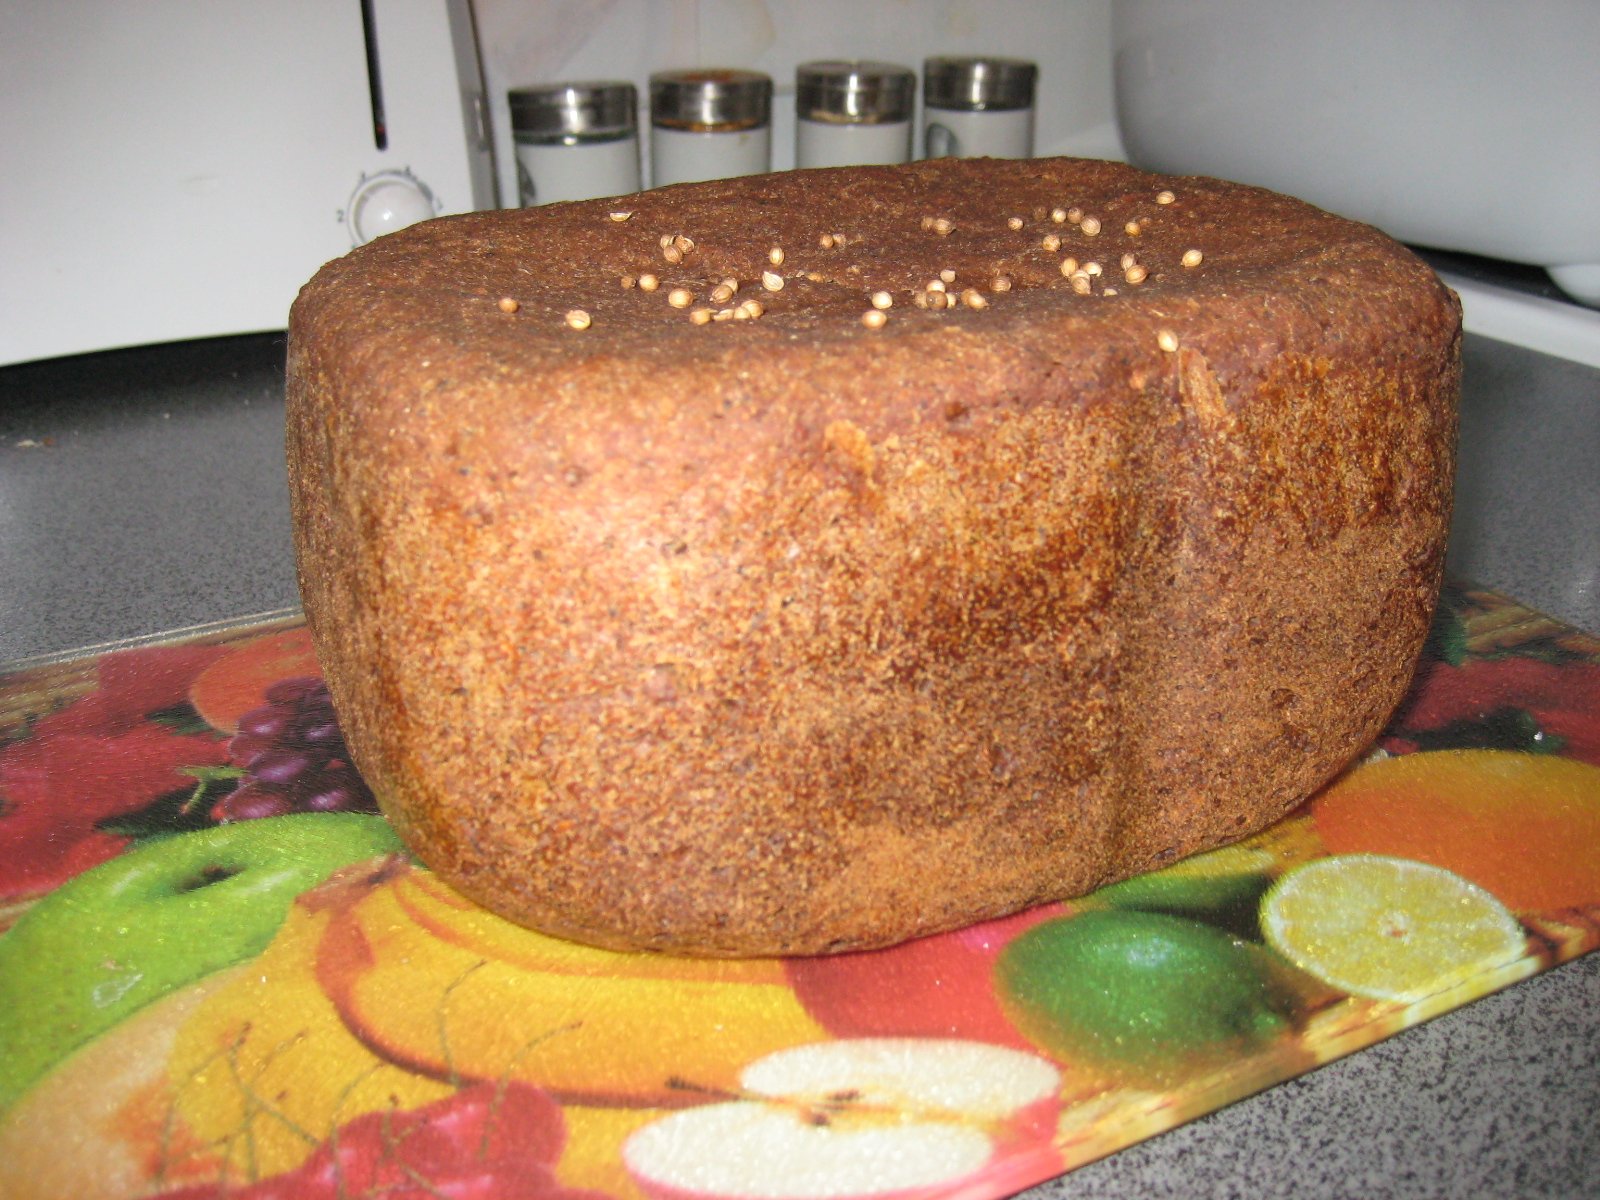 Borodino brood volgens het recept van 1939